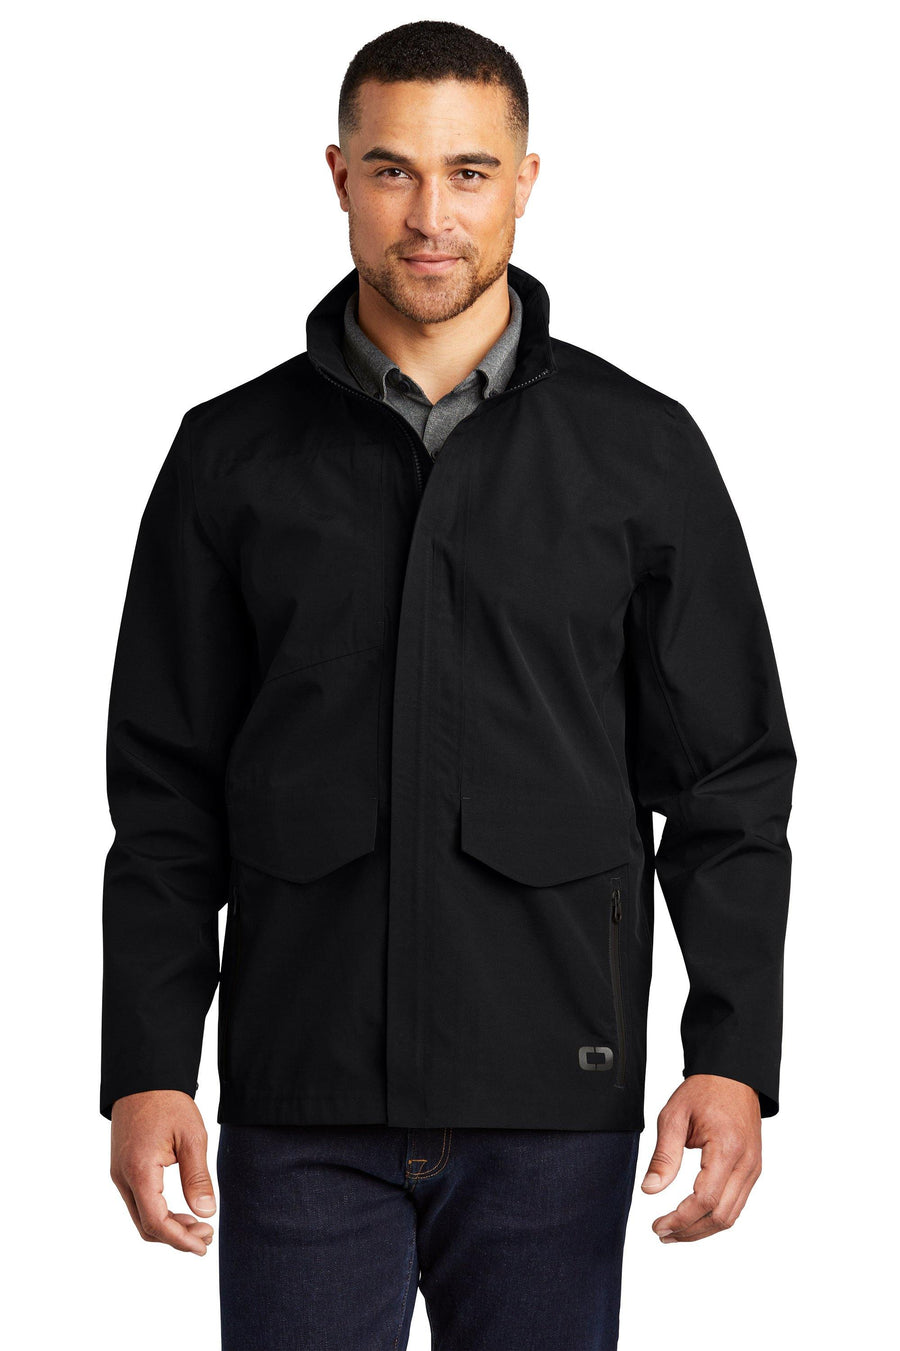 Keller Williams KW-SMOG752 OGIO® Men's Utilitarian Jacket 